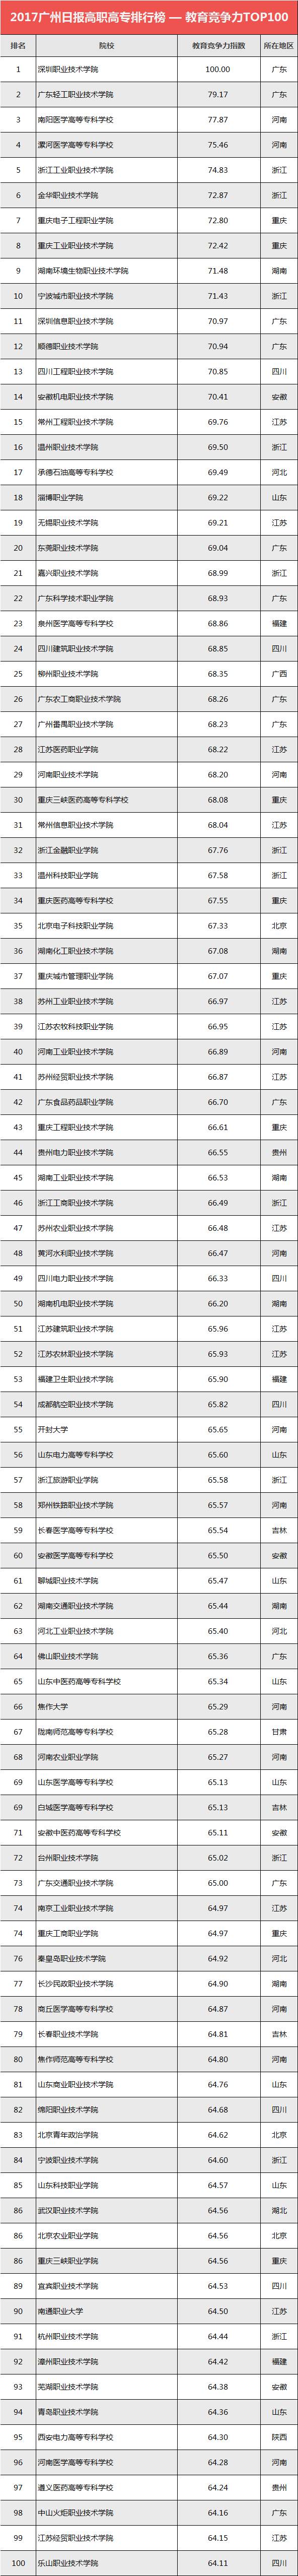 2017广州日报高职高专排行榜—教育竞争力TOP100榜